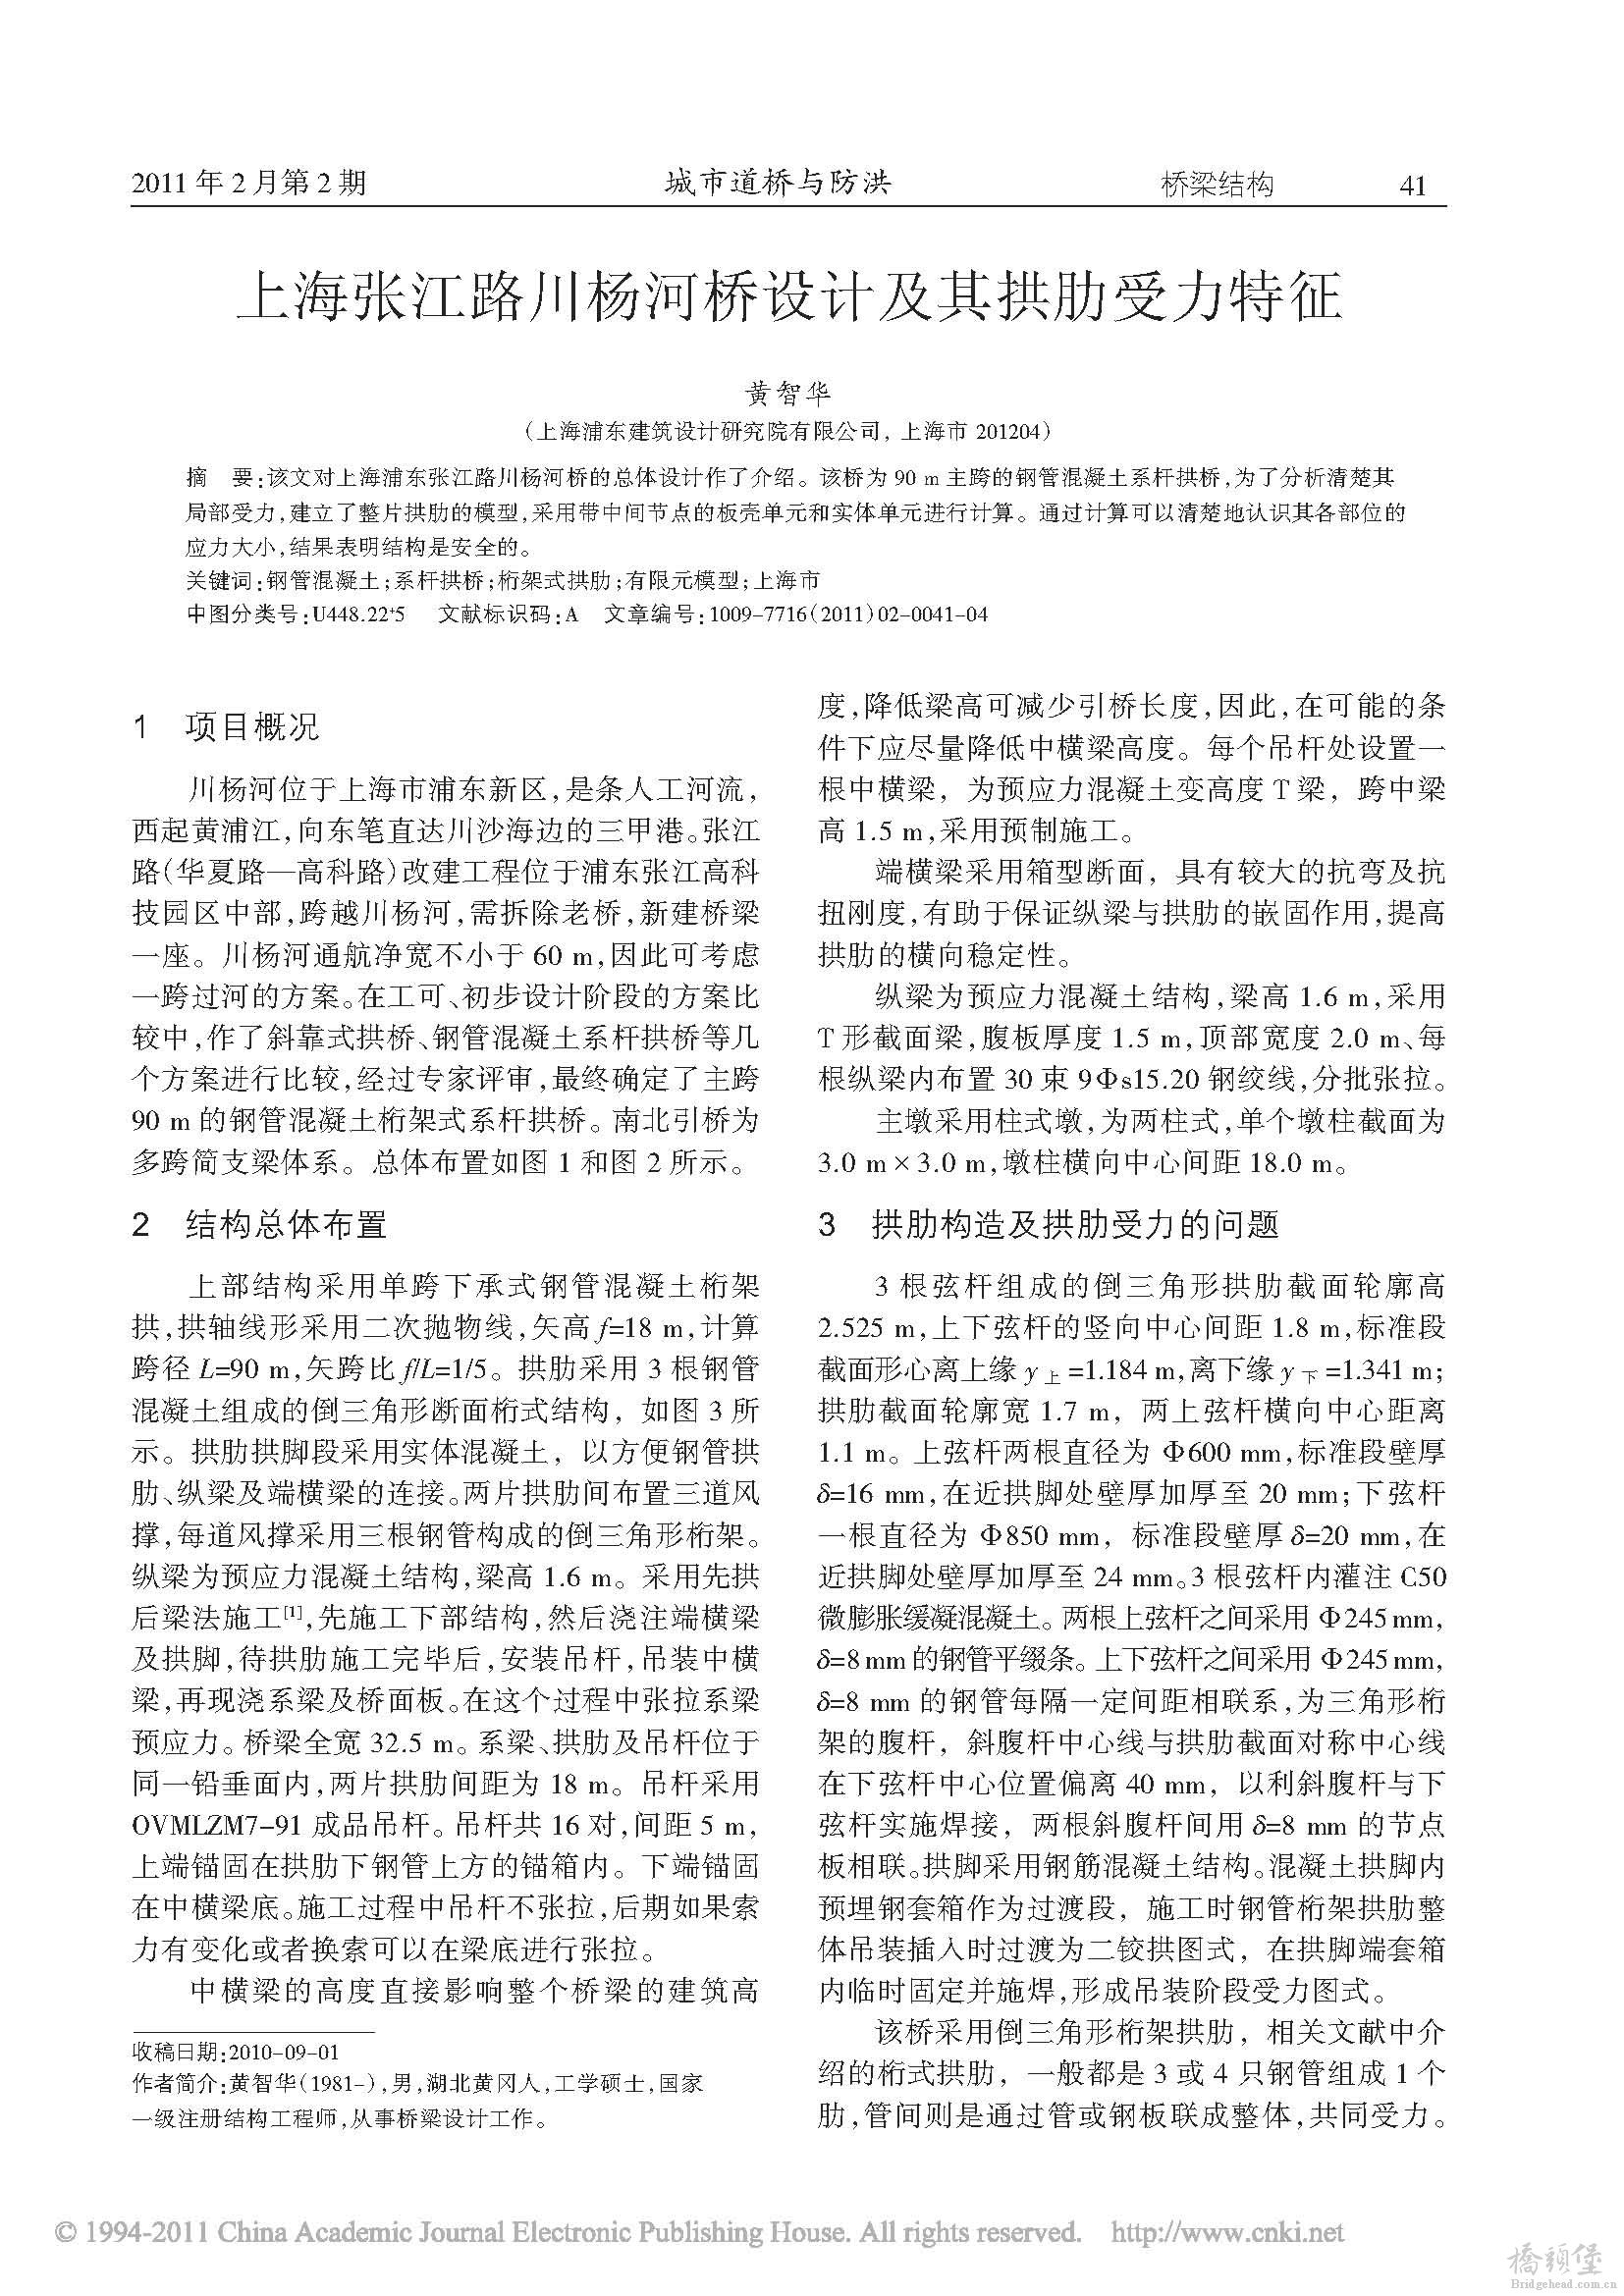 上海张江路川杨河桥设计及其拱肋受力特征_页面_1.jpg